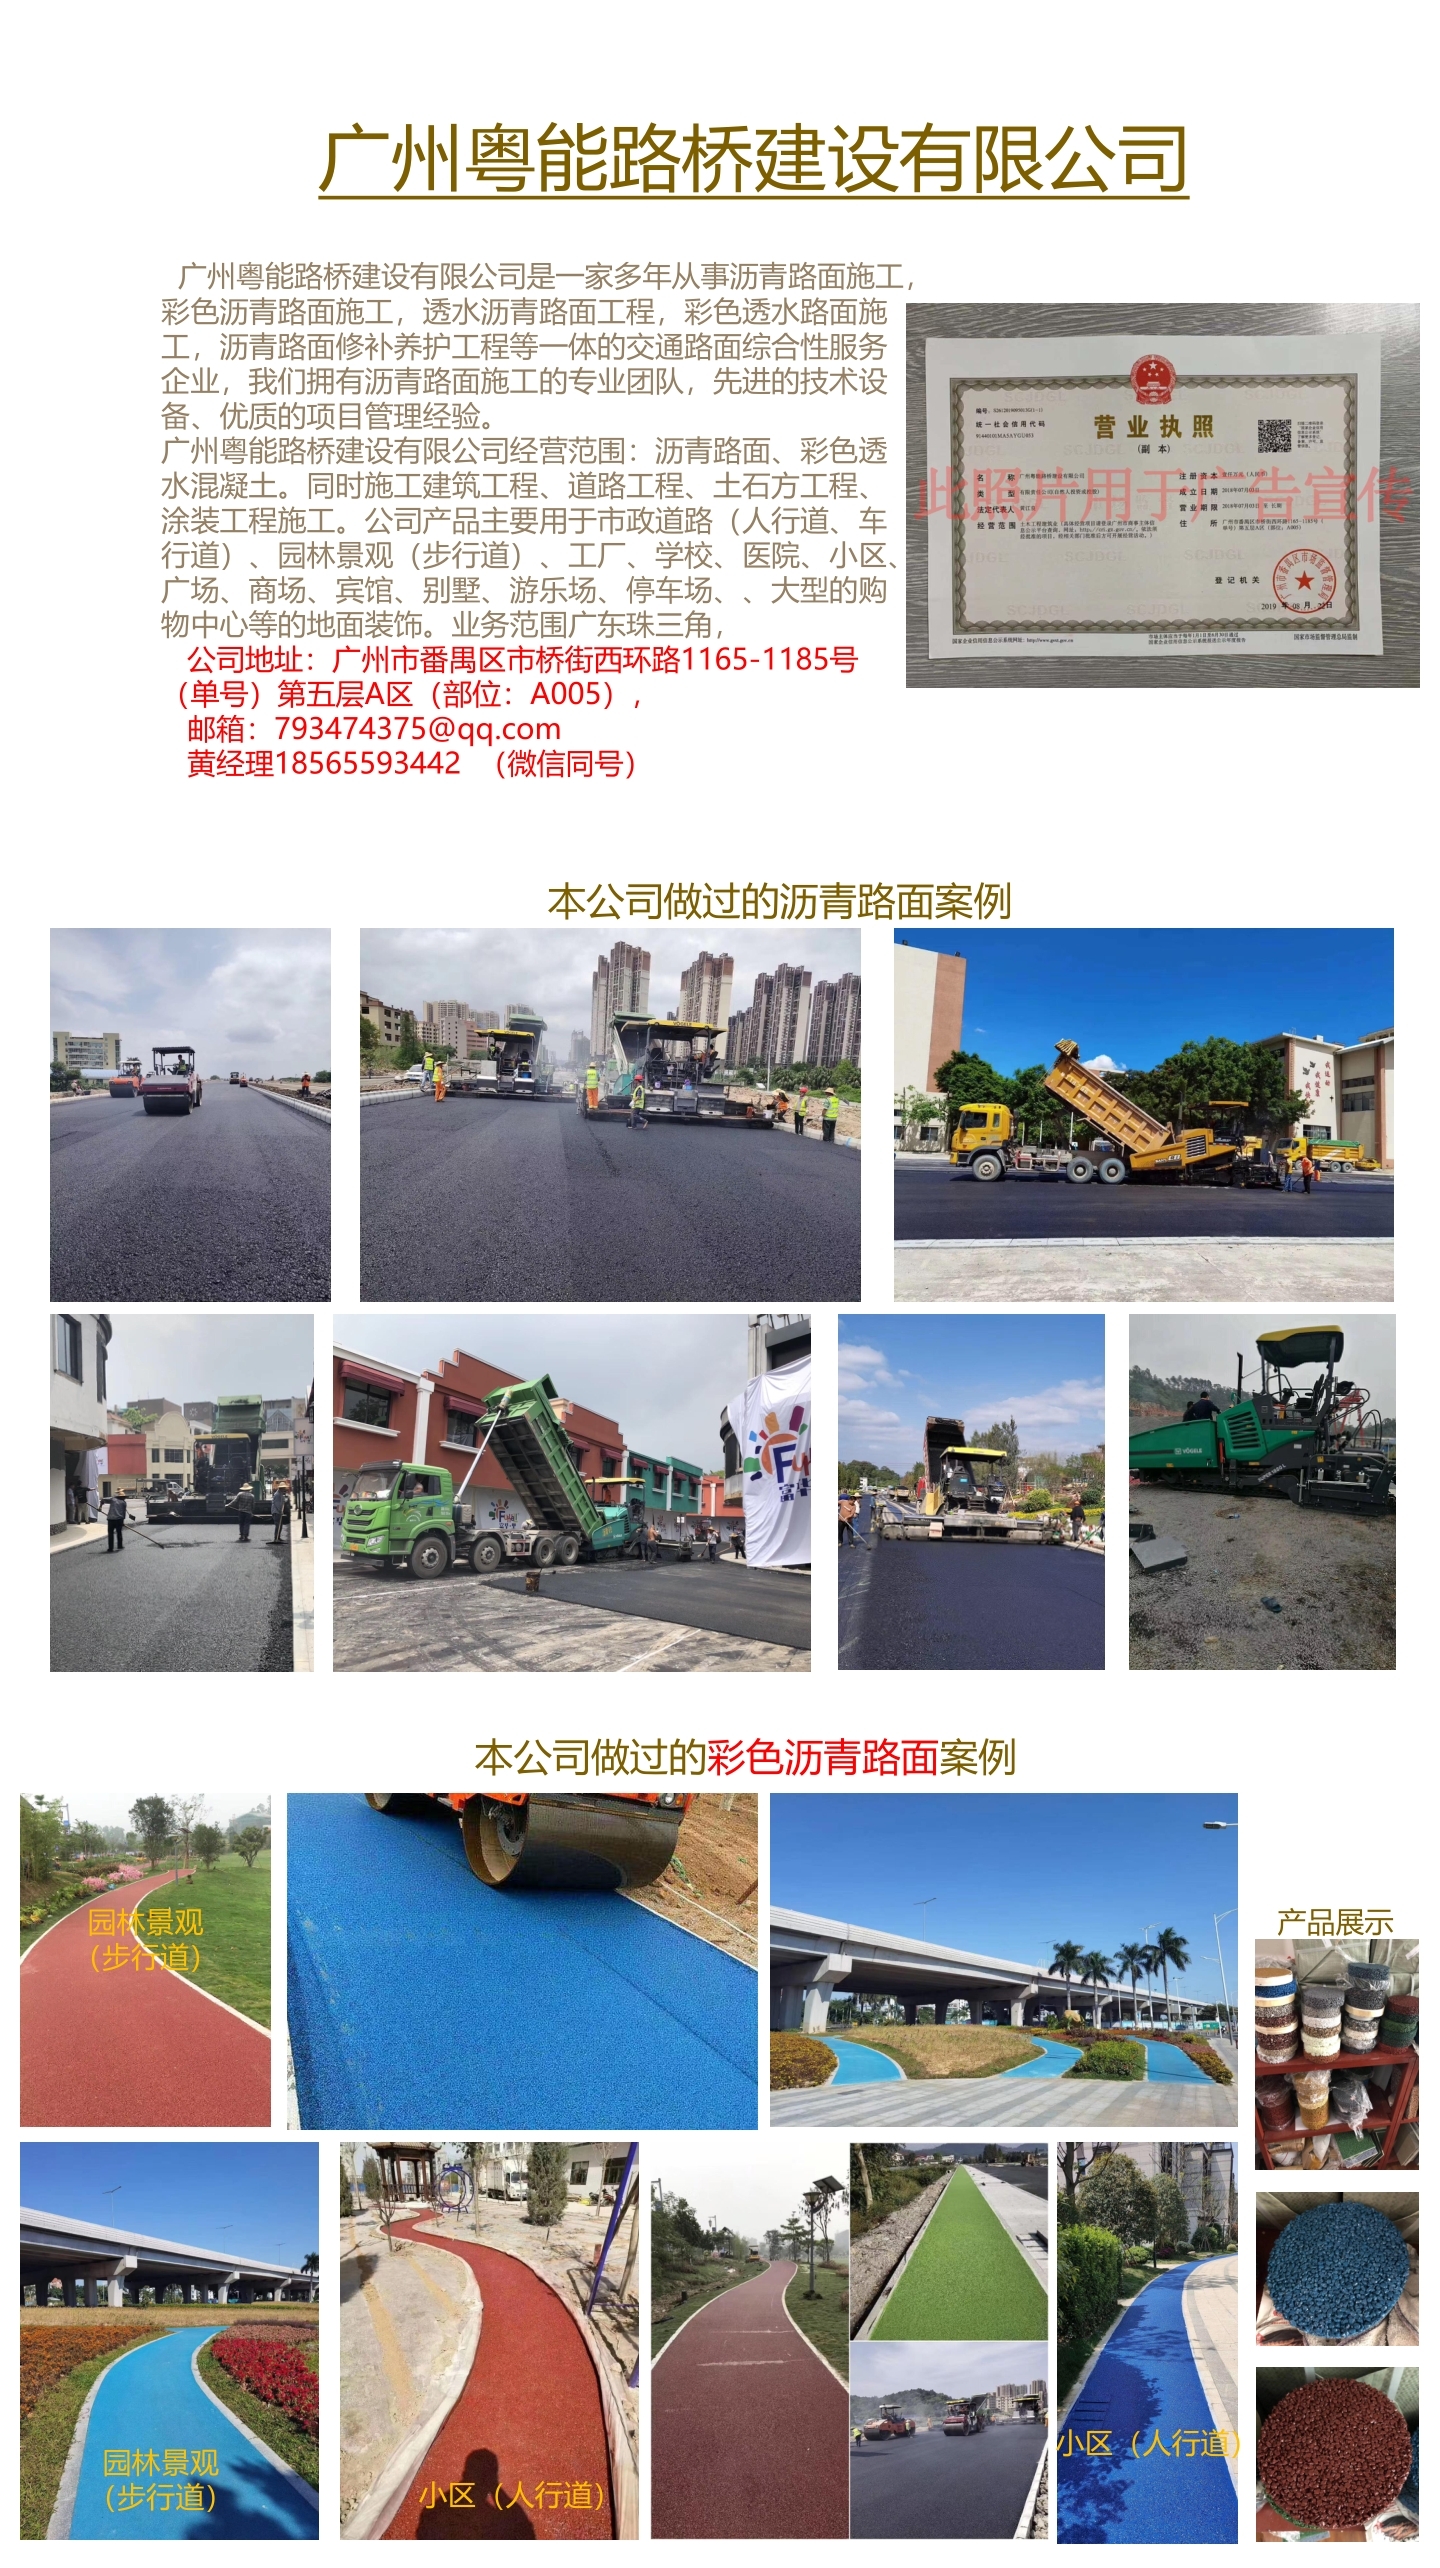 在广州有沥青路面项目的找我哈 专业承包